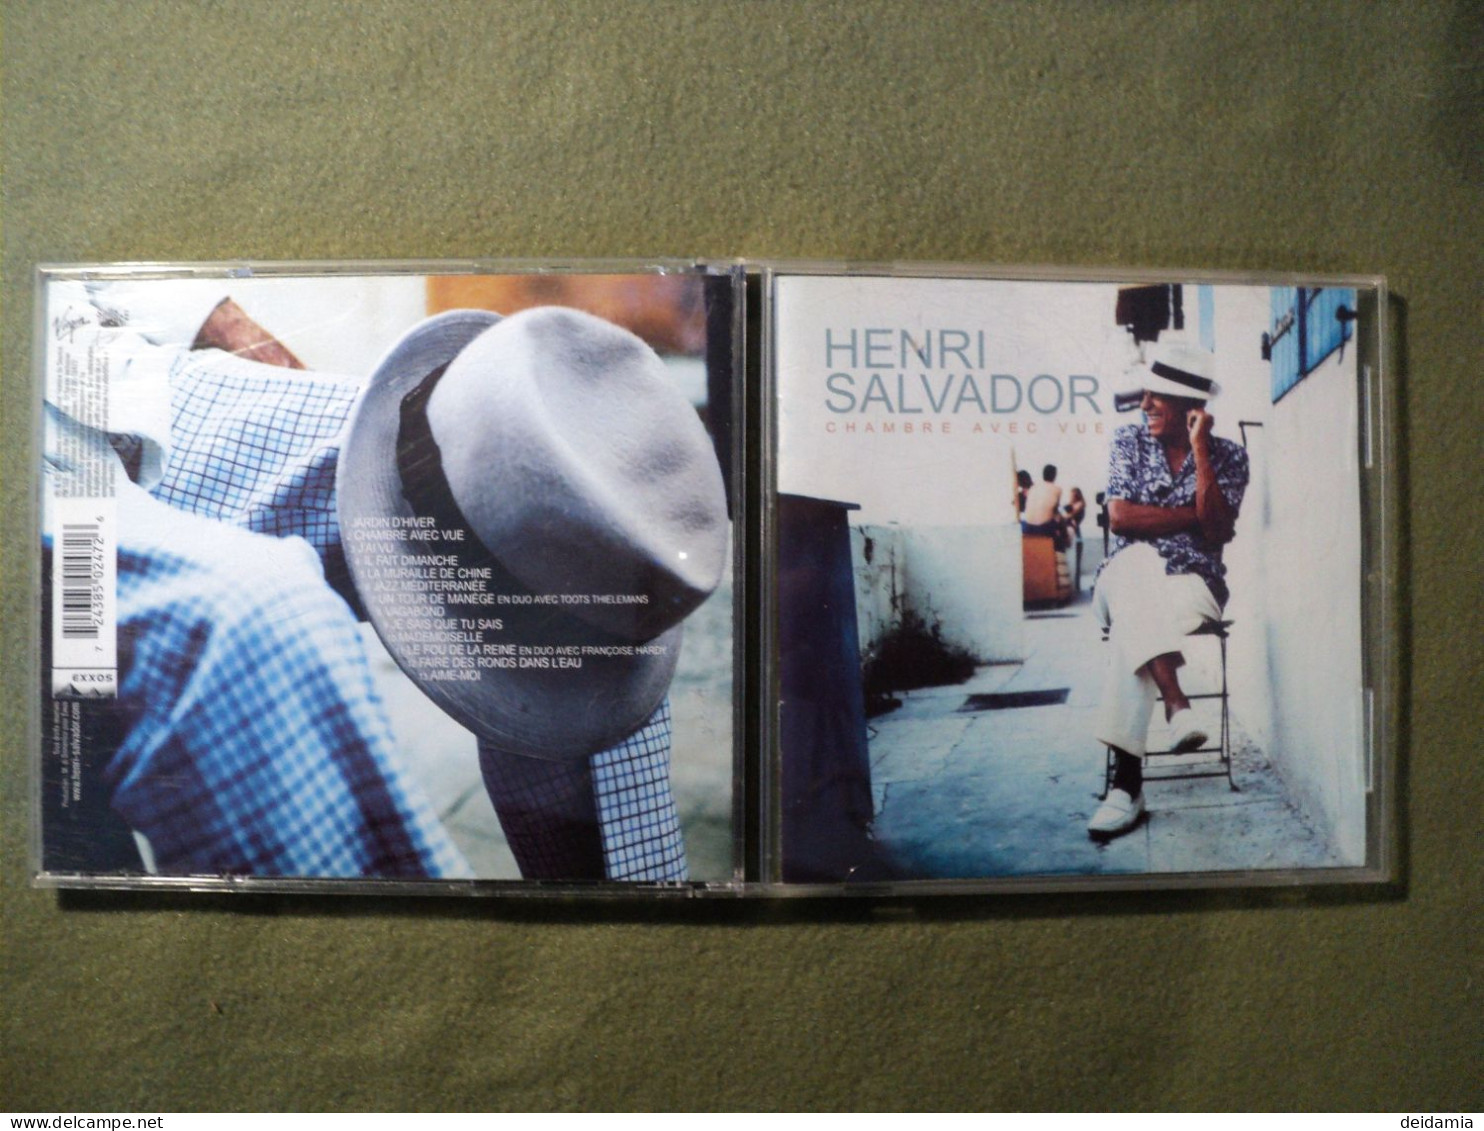 HENRI SALVADOR. CD 13 TITRES DE 2000. CHAMBRE AVEC VUE. 724385 02472 6 JARDIN D HIVER / CHAMBRE AVEC VUE / J AI VU / IL - Other - French Music